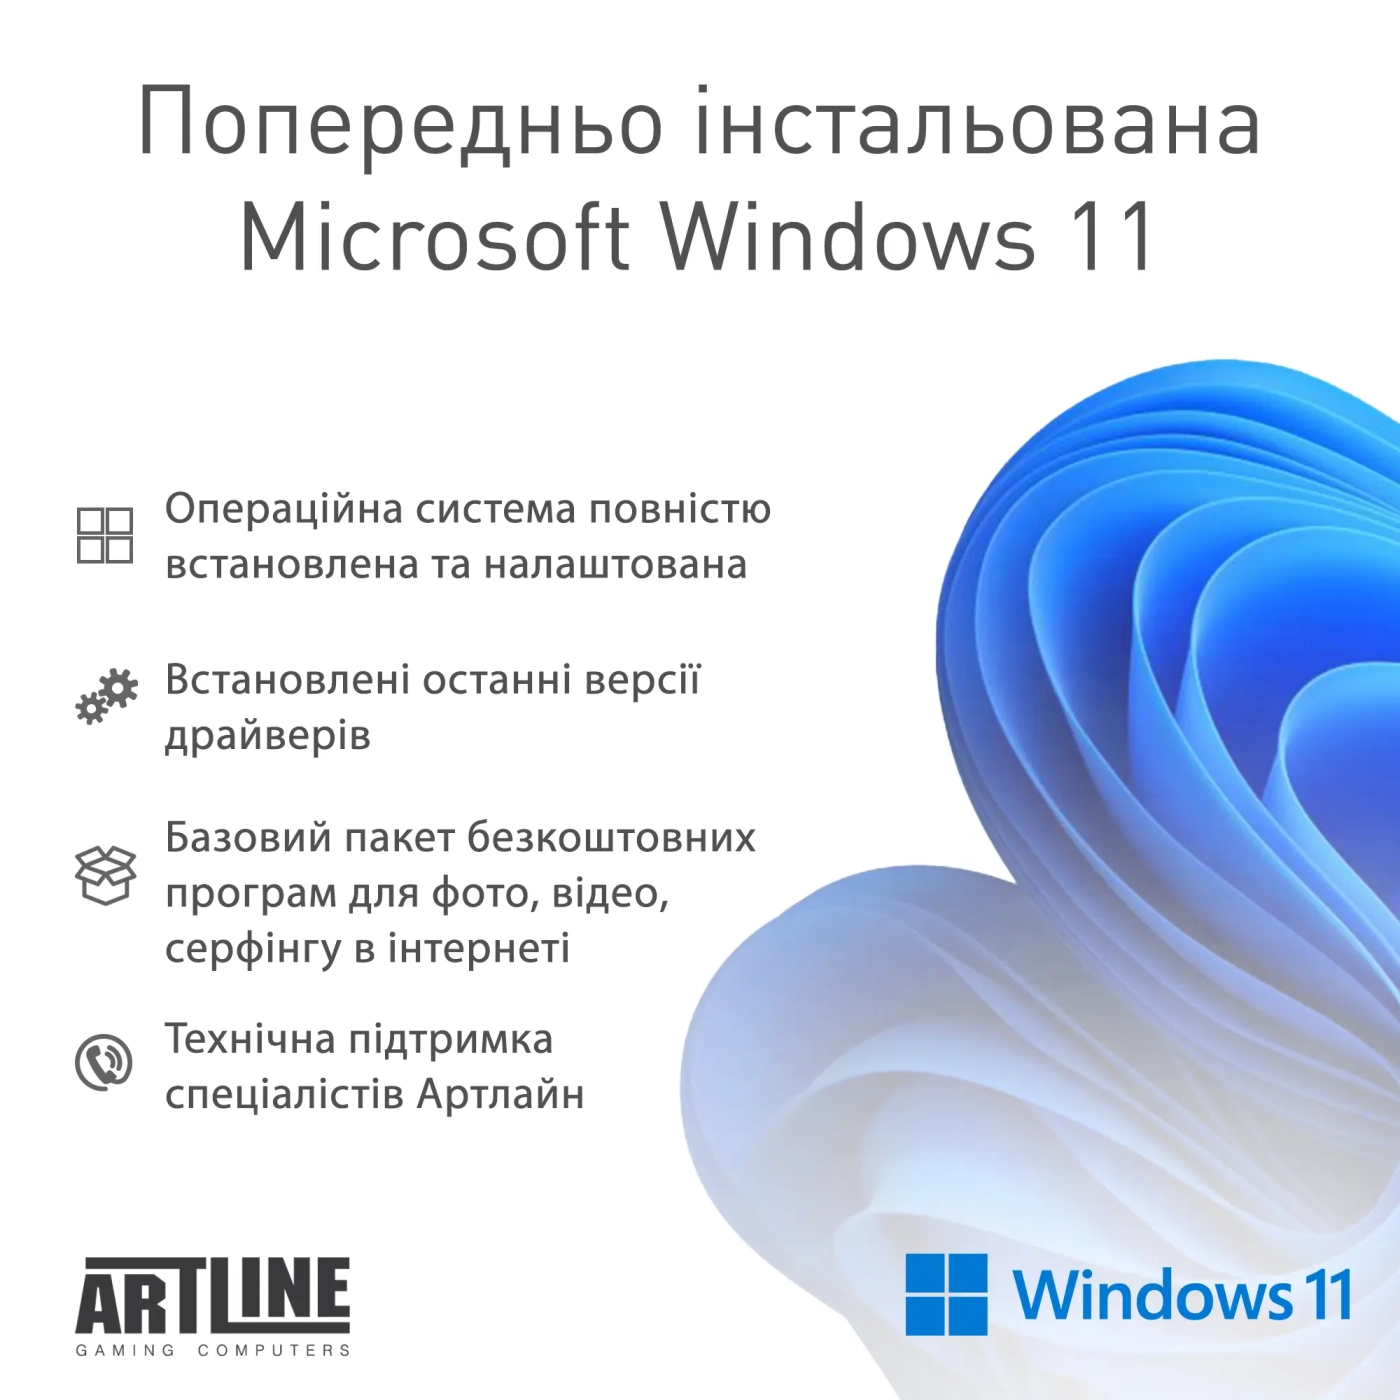 Купить Компьютер ARTLINE Gaming D31 Windows 11 Home (D31v16Win) - фото 12